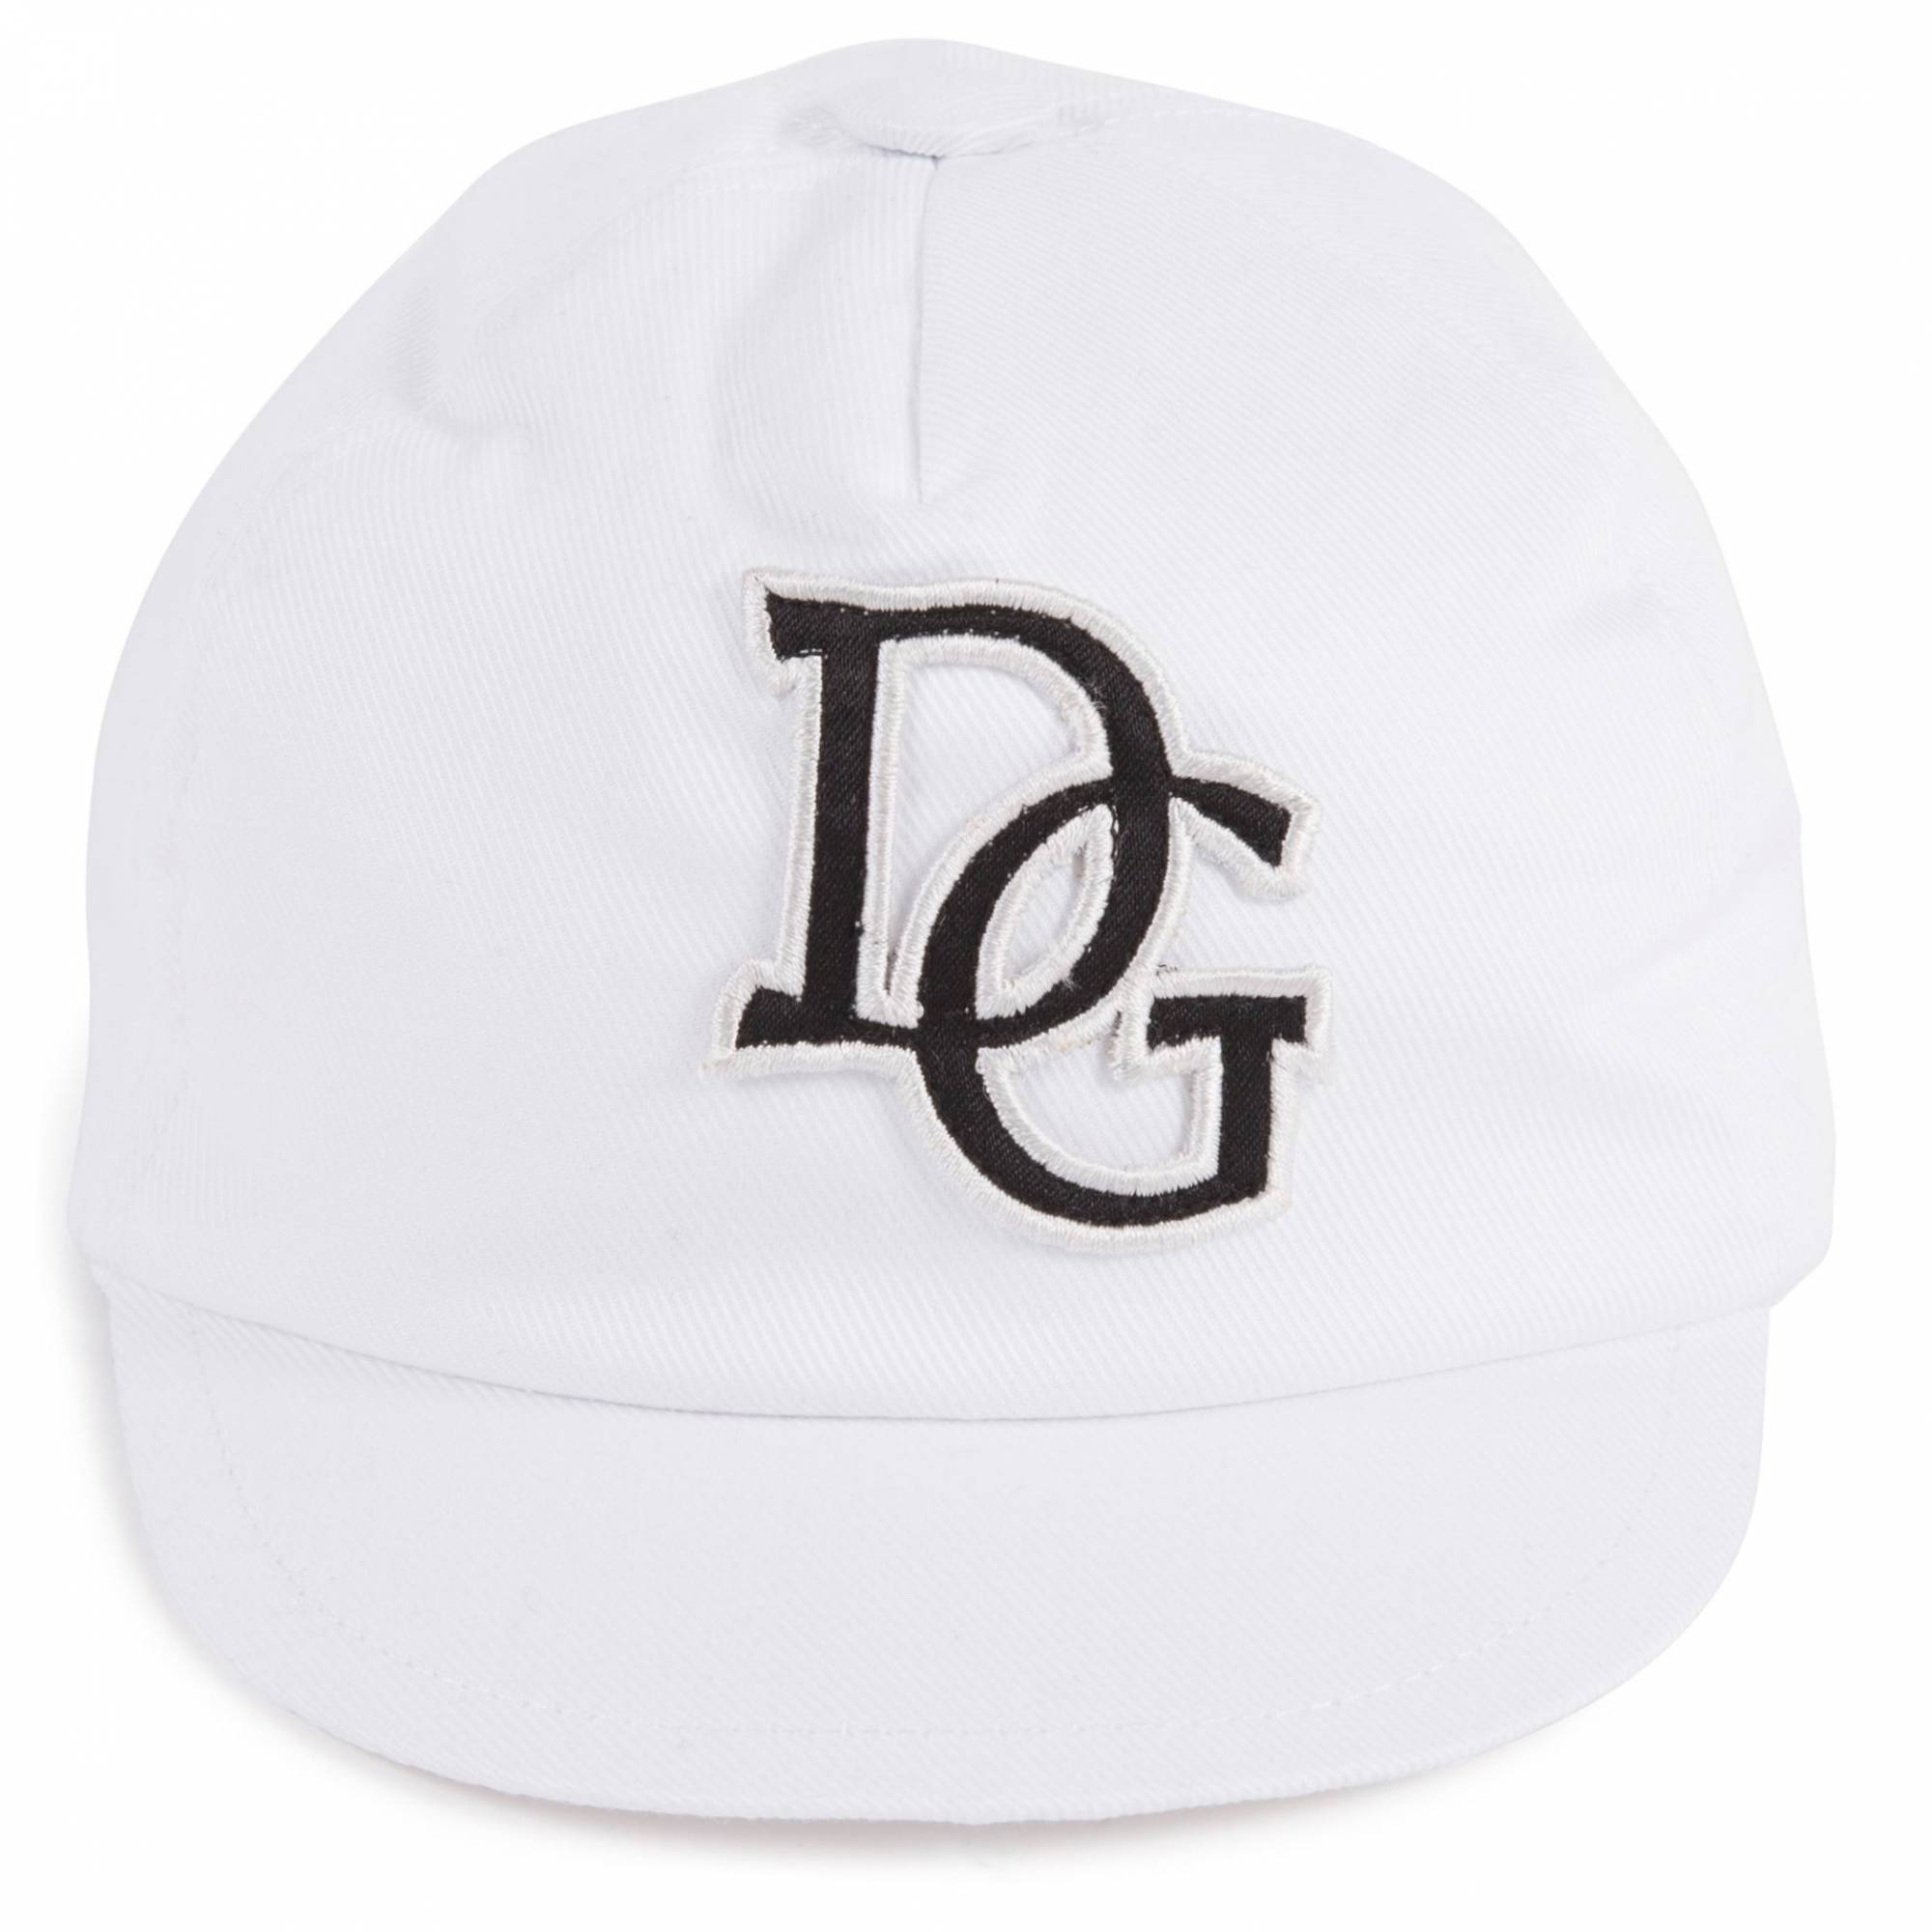 Baby DG Logo - Dolce & Gabbana Baby DG Cap in White